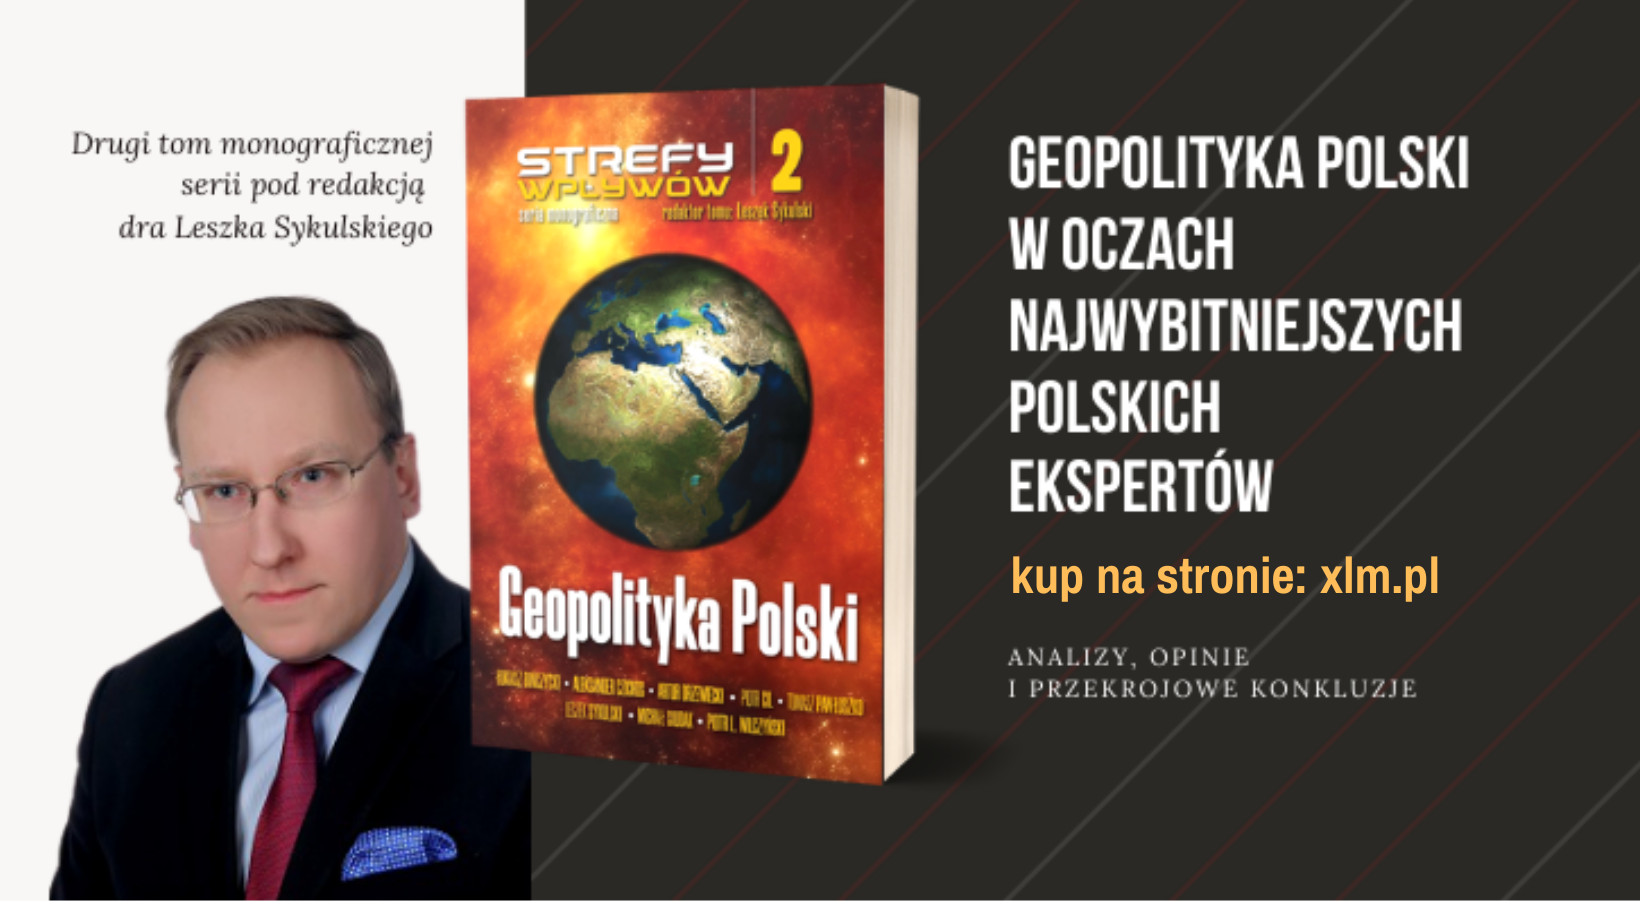 Geopolityka Polski – najnowsza książka pod moją redakcją naukową